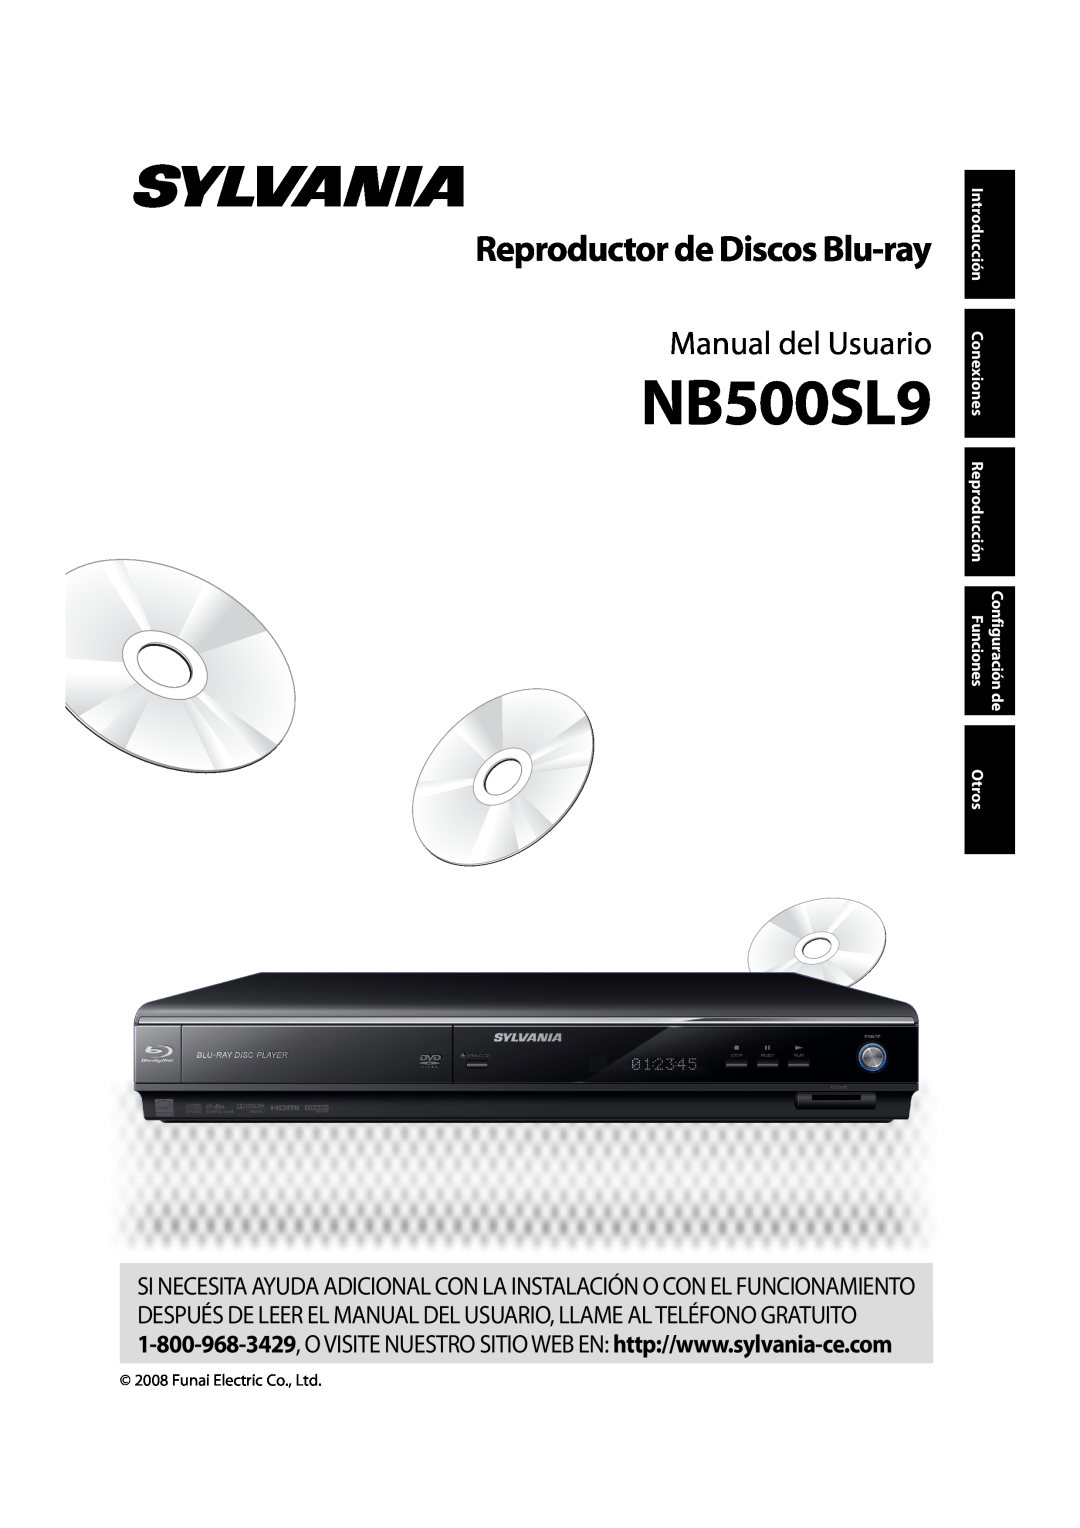 Sylvania NB500SL9 Reproductor de Discos Blu-ray, Manual del Usuario, Introducción, Conexiones, Reproducción, Funciones 